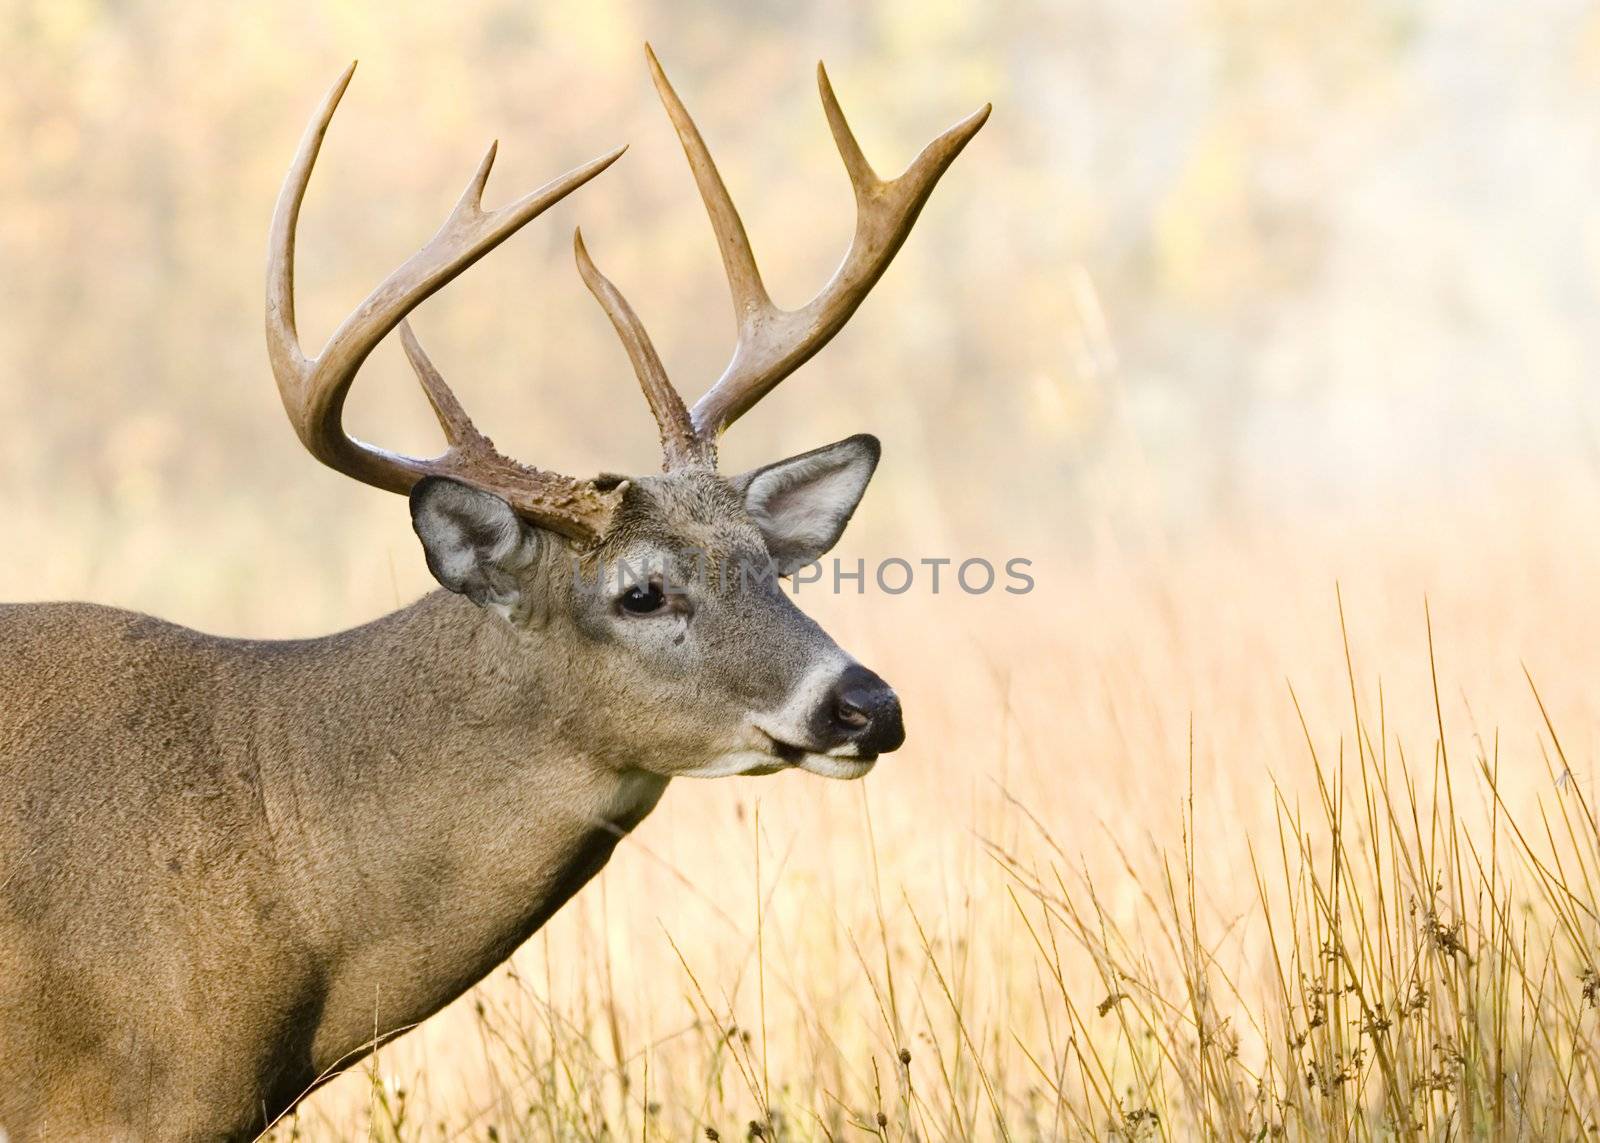 Whitetail deer buck close-up head shot.